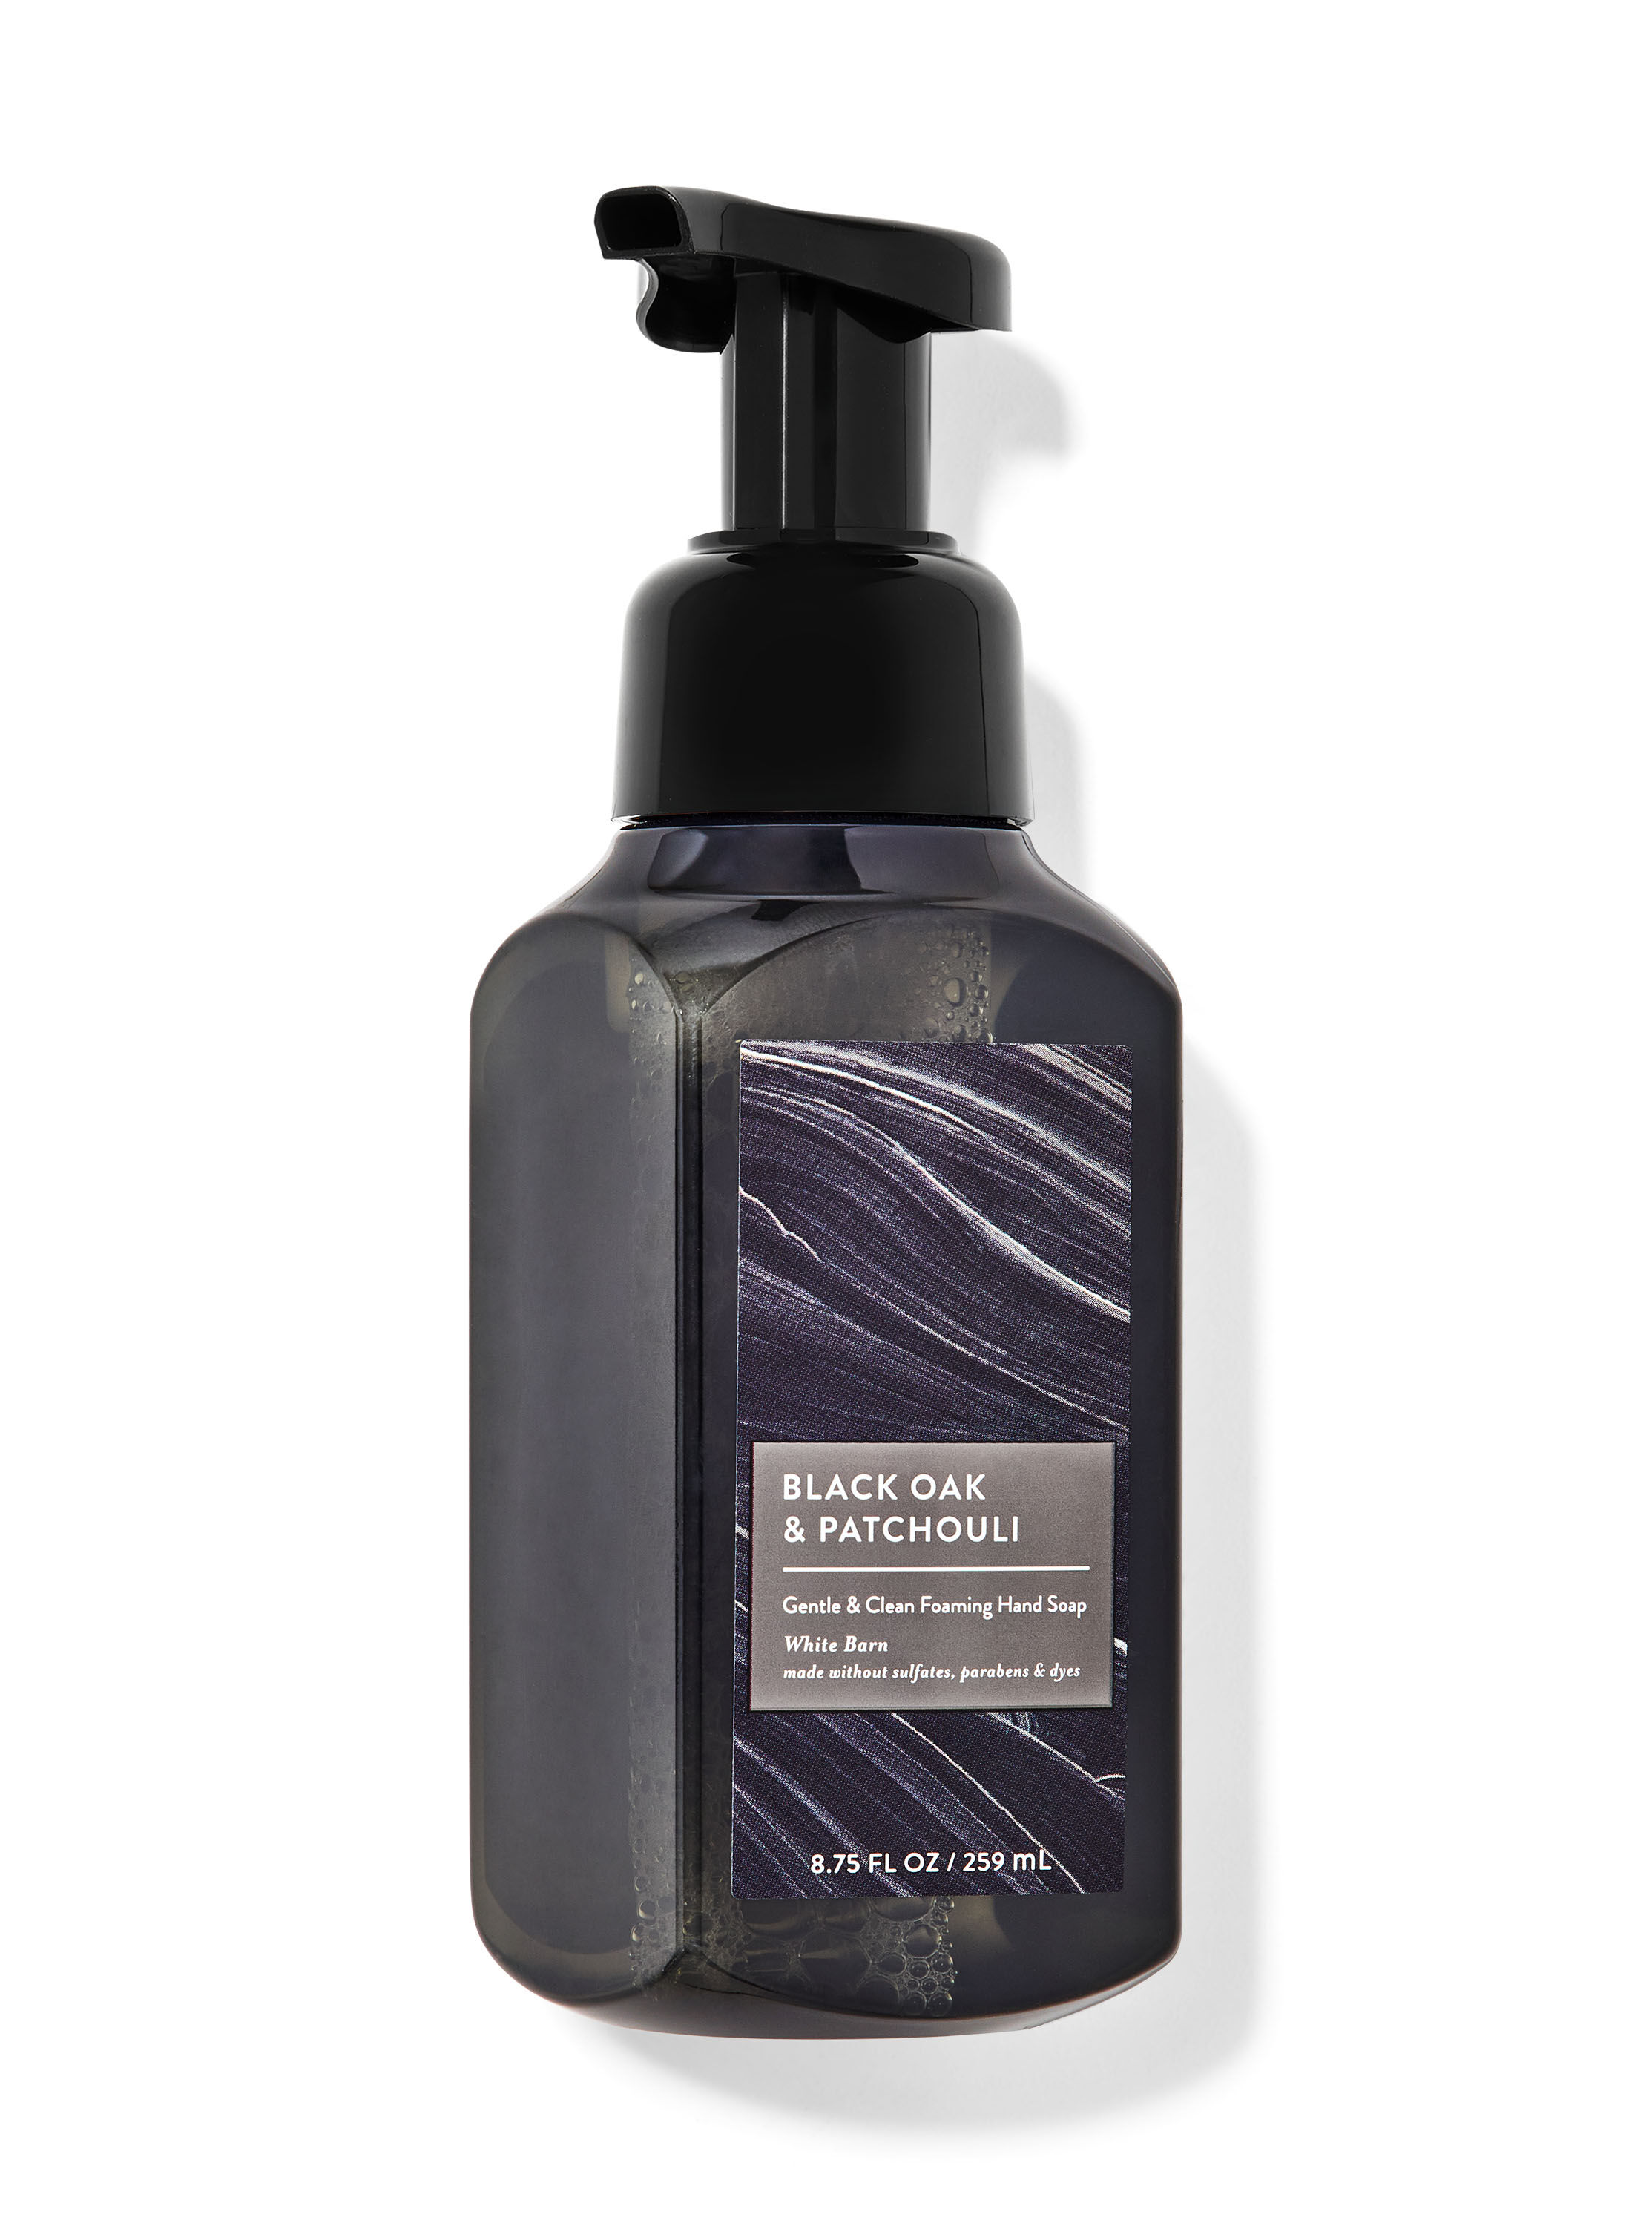 Black Oak & Patchouli Gentle & Clean Foaming Hand Soap